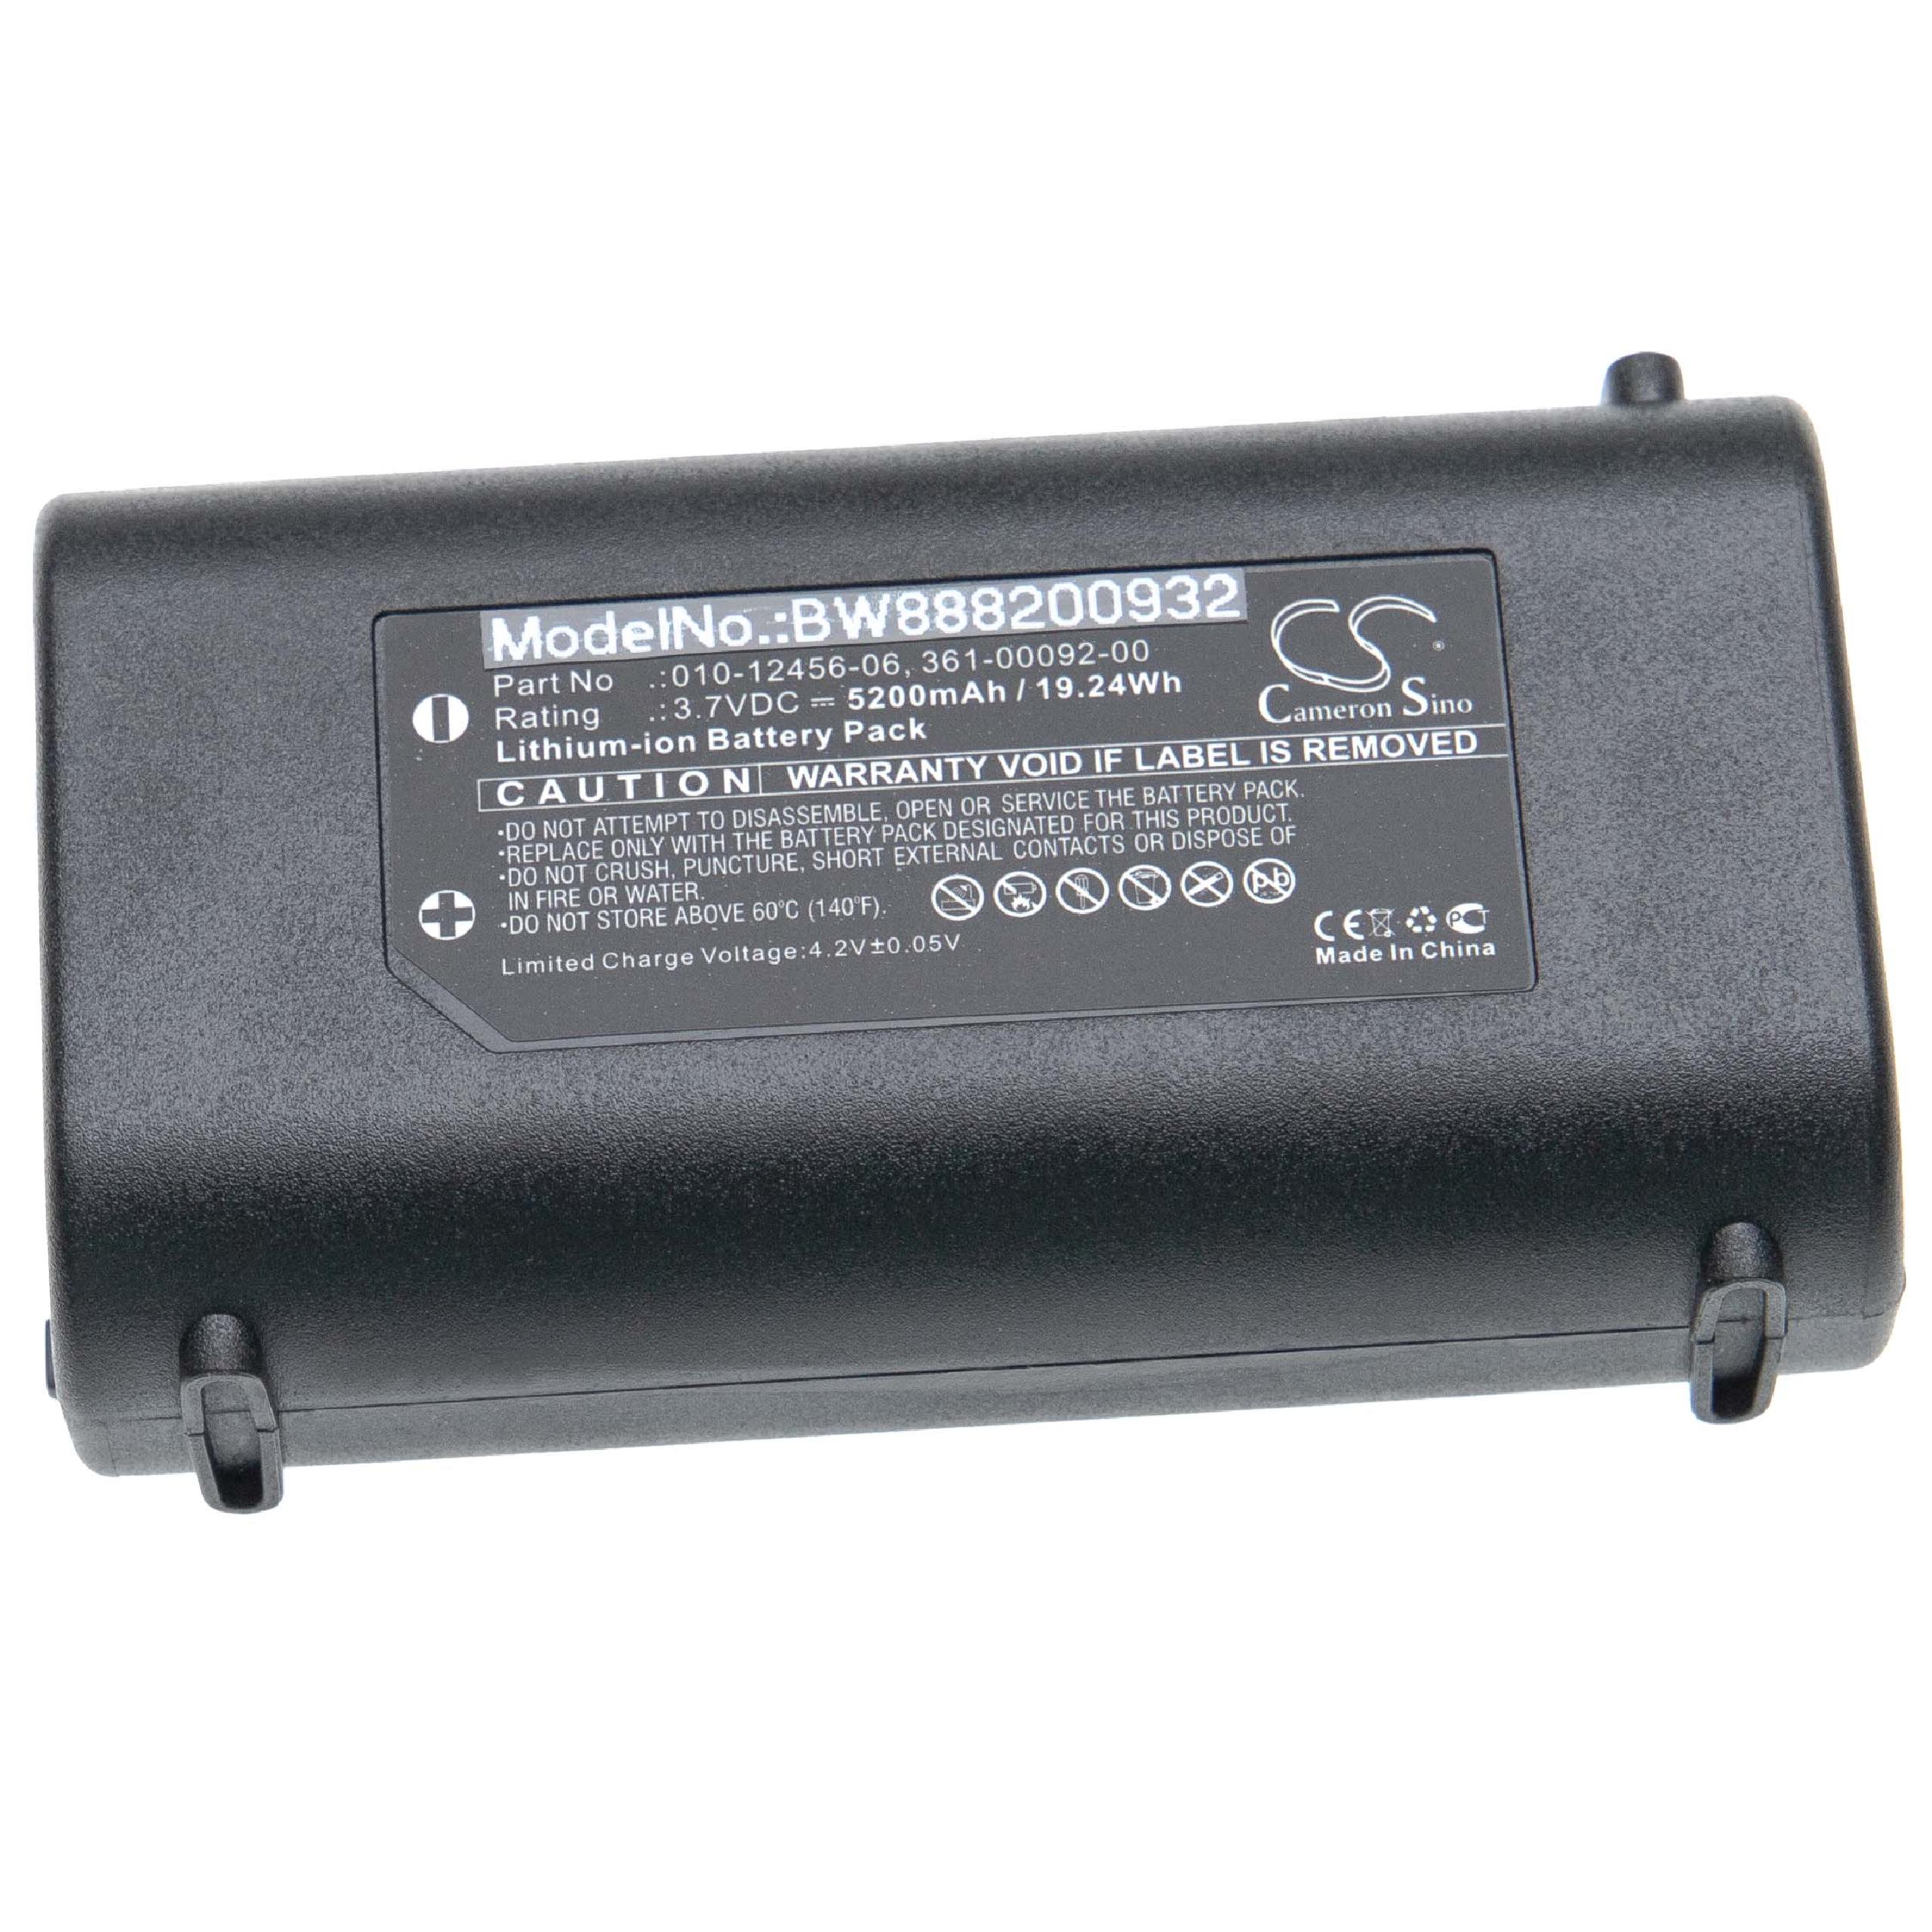 Akumulator do lokalizatora GPS zamiennik Garmin 010-12456-06, 361-00092-00 - 5200 mAh 3,7 V Li-Ion